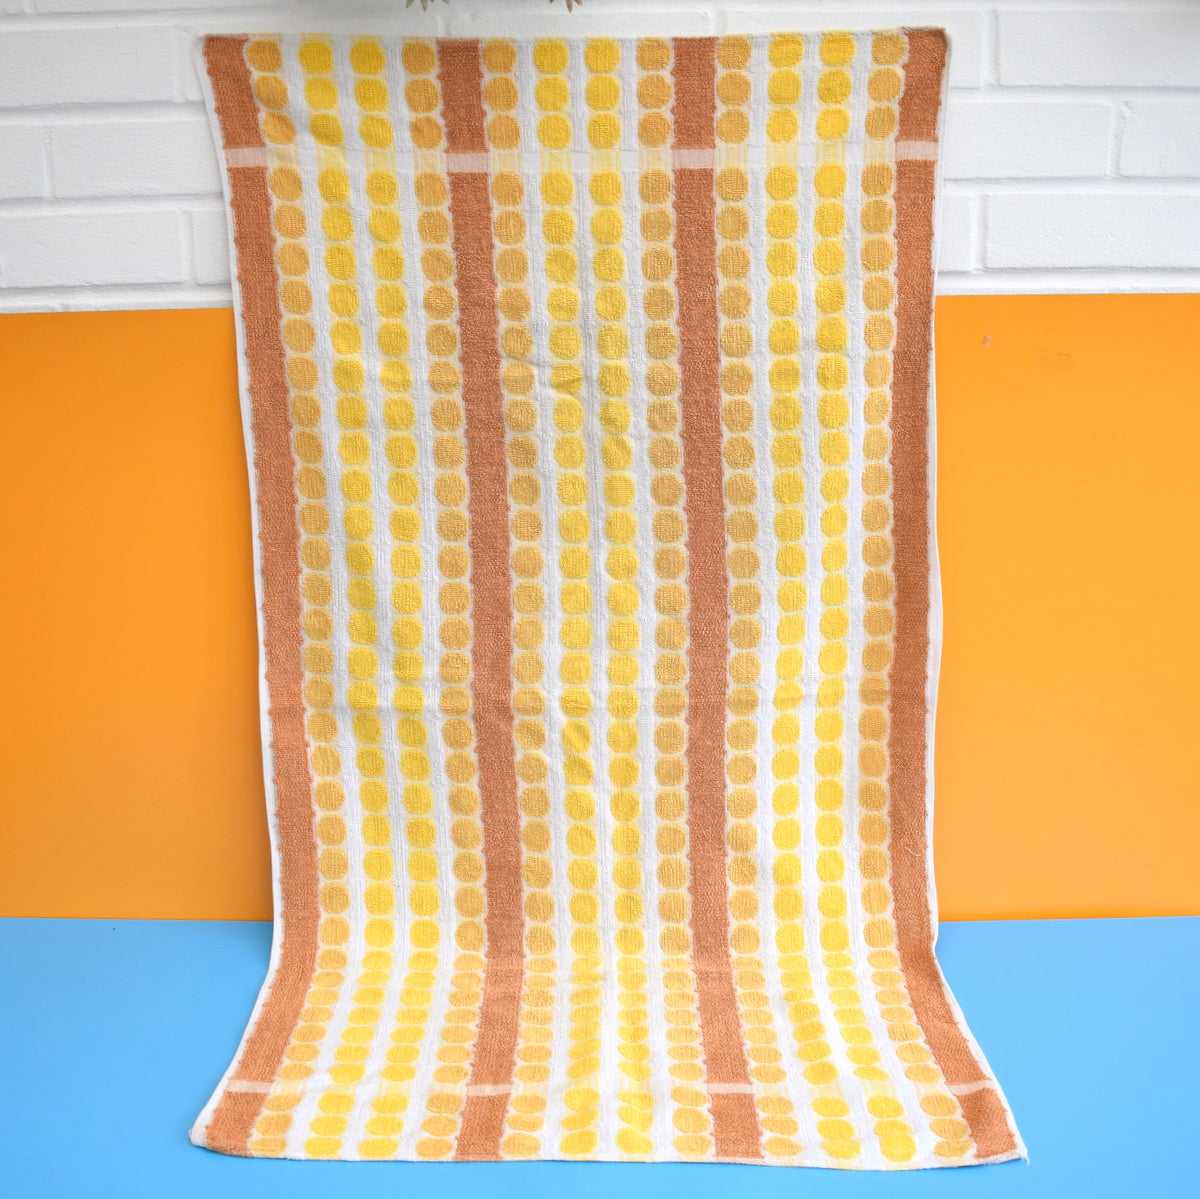 Vintage 1960s Cotton Bath Towel - Spots - Yellow